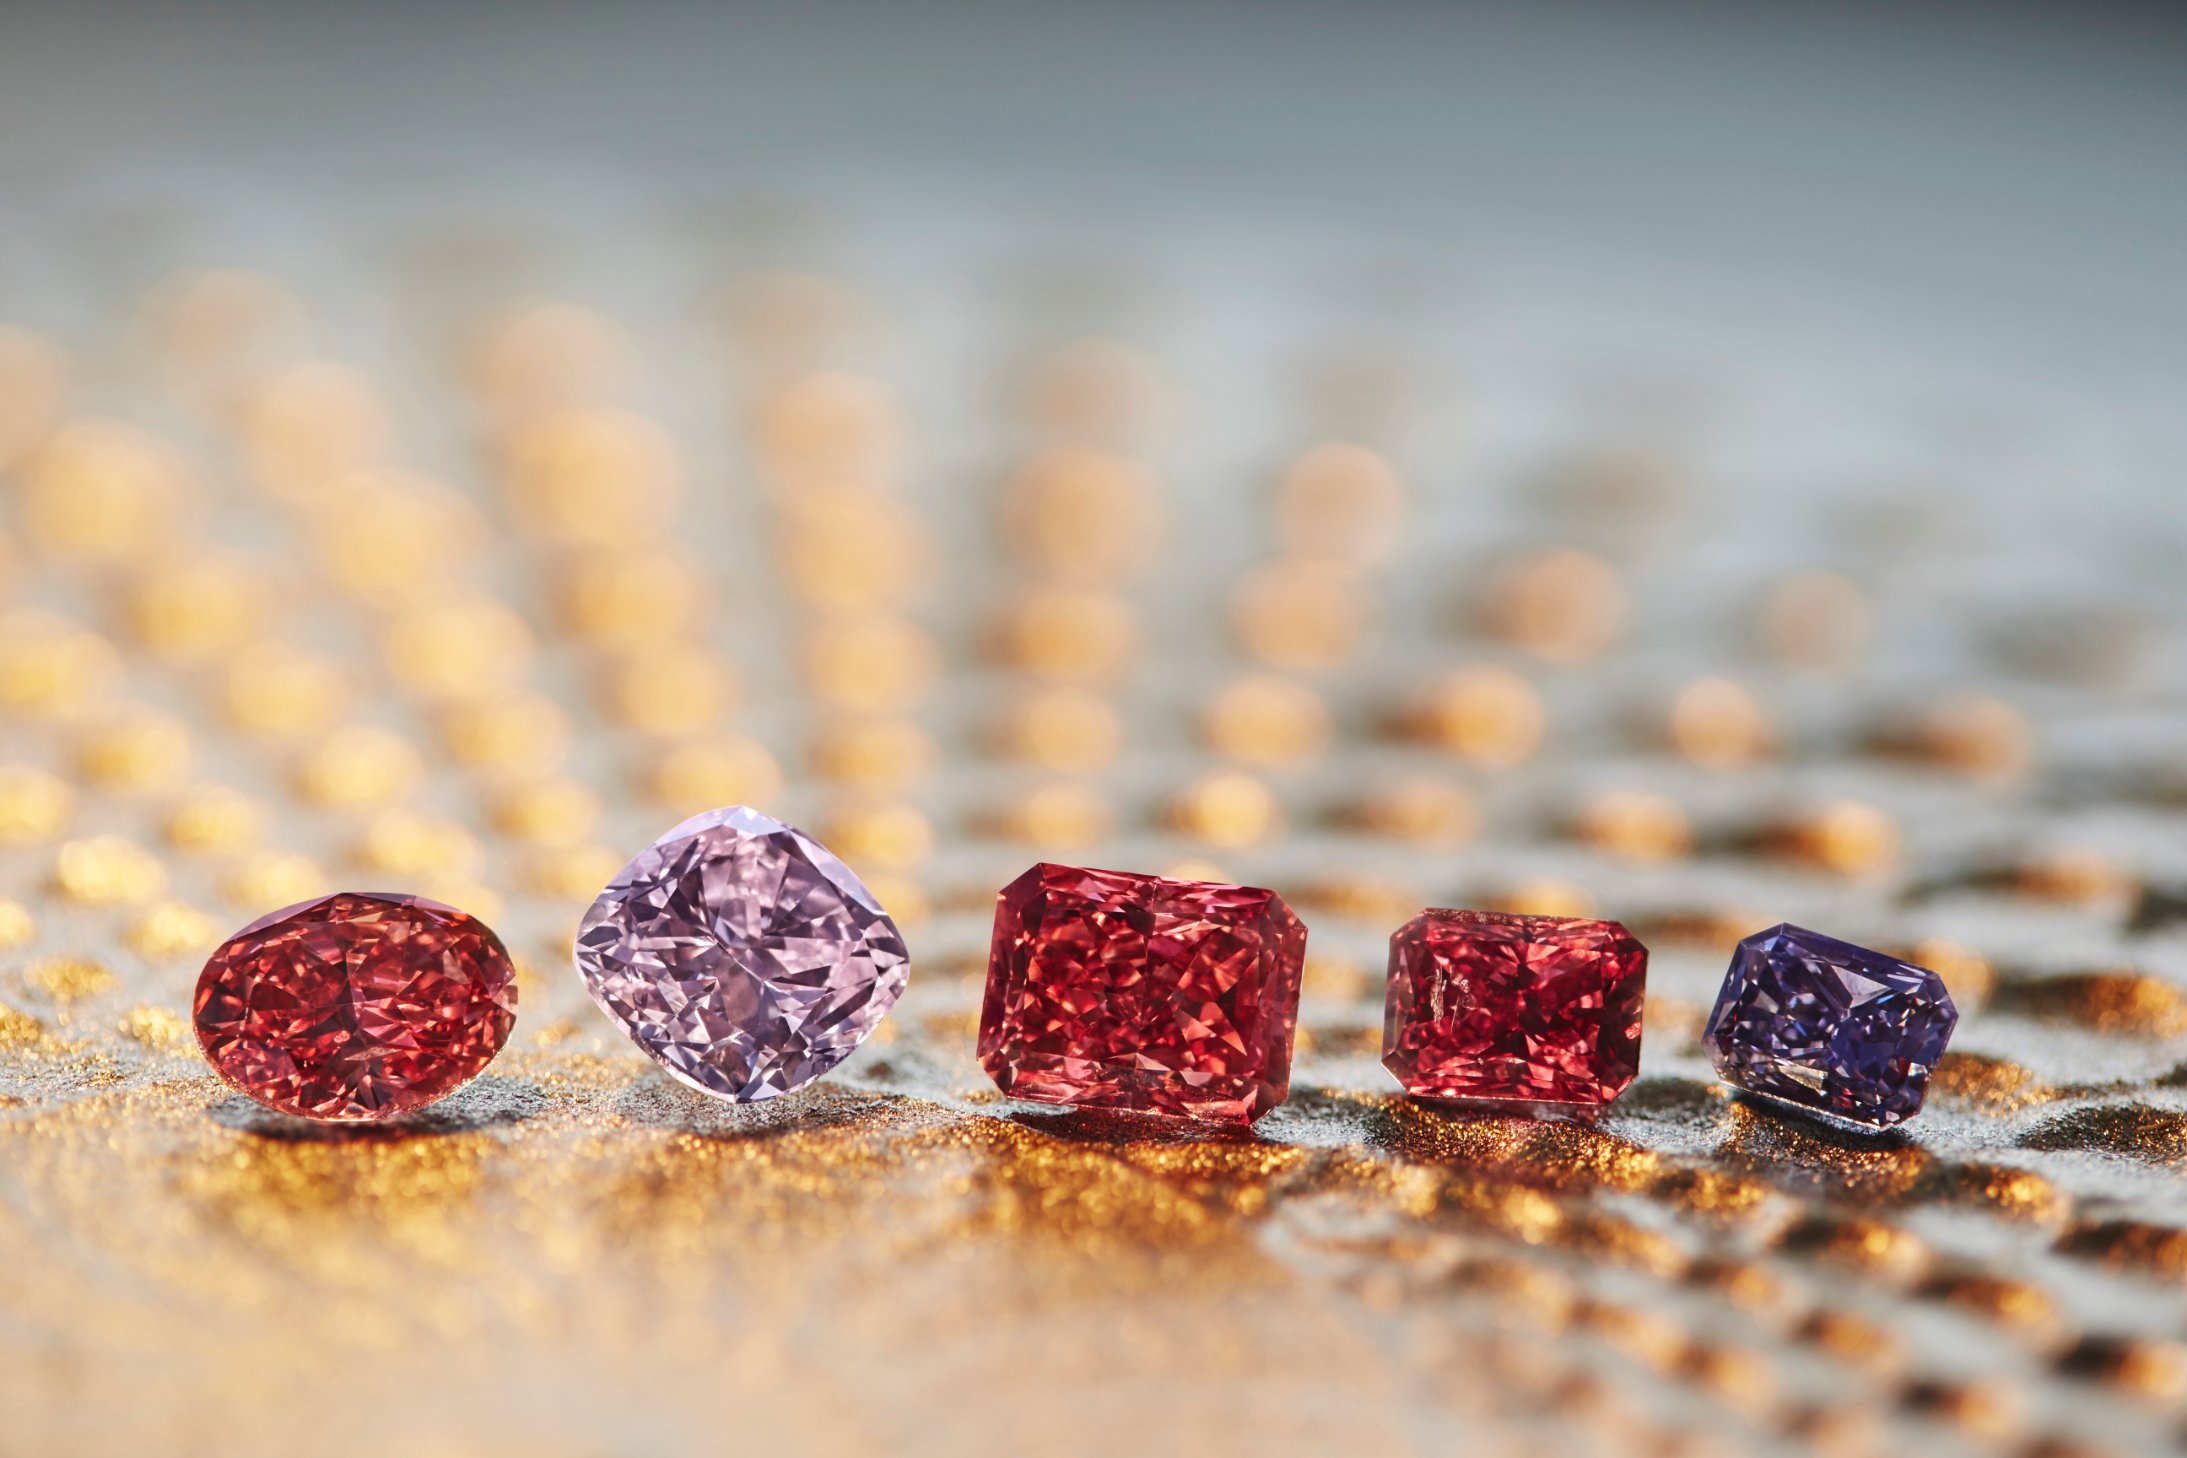 i tilfælde af straf evaluerbare Rare Fancy Red diamond could sell for millions - CNN Style